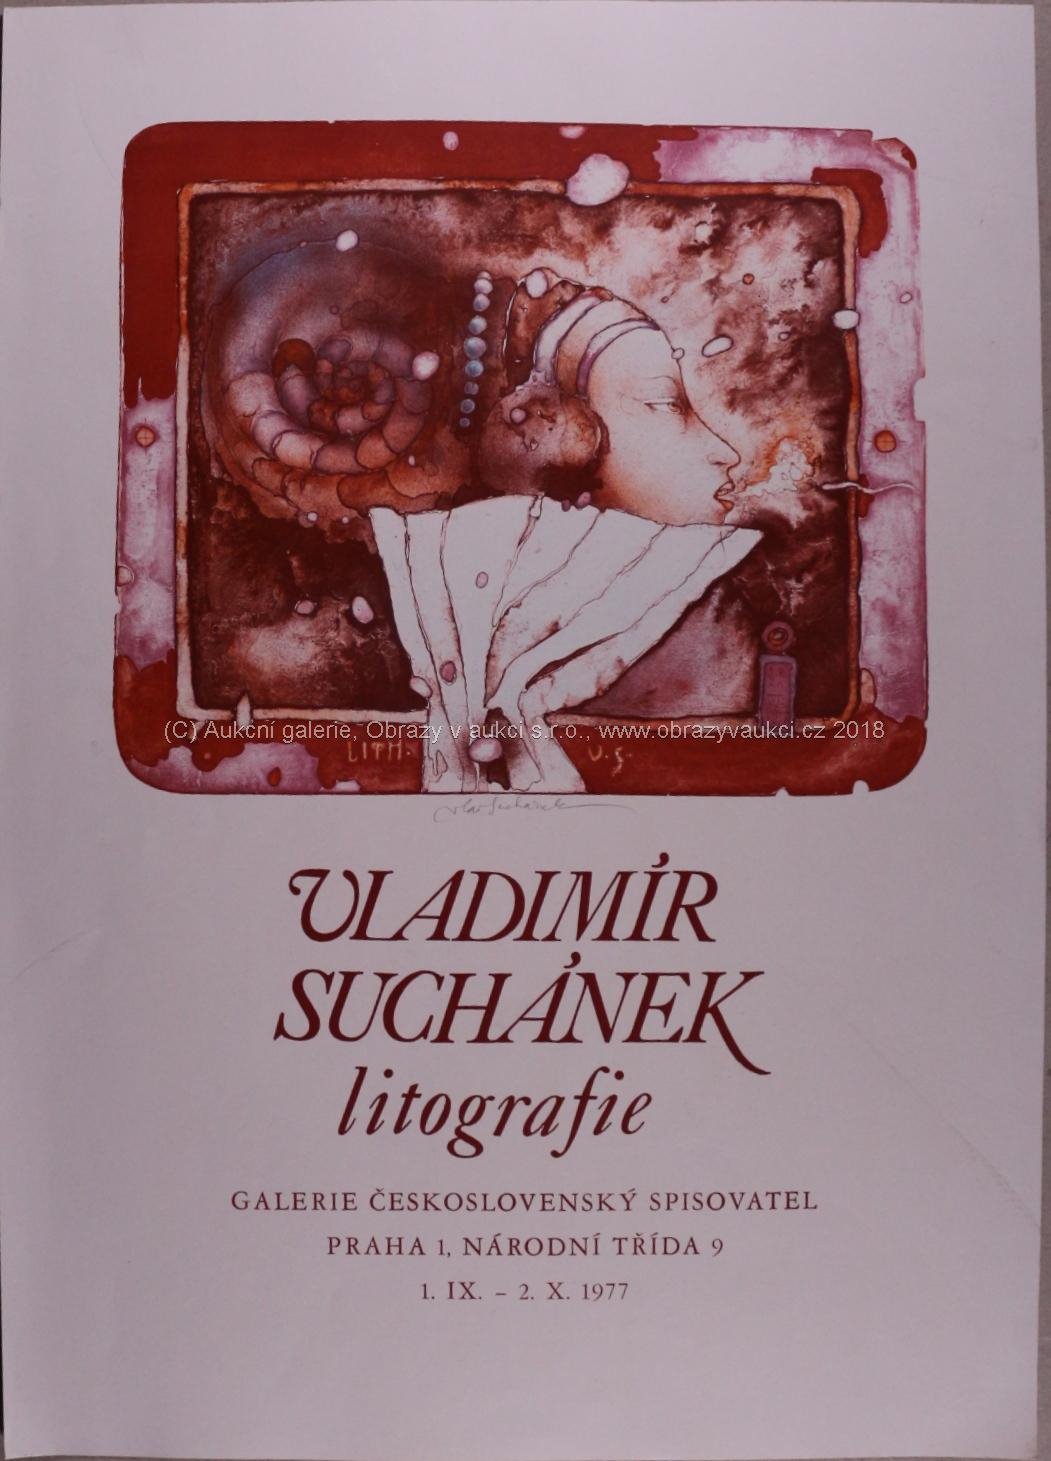 Vladimír Suchánek - Hlava ženy - plakát k výstave 1977